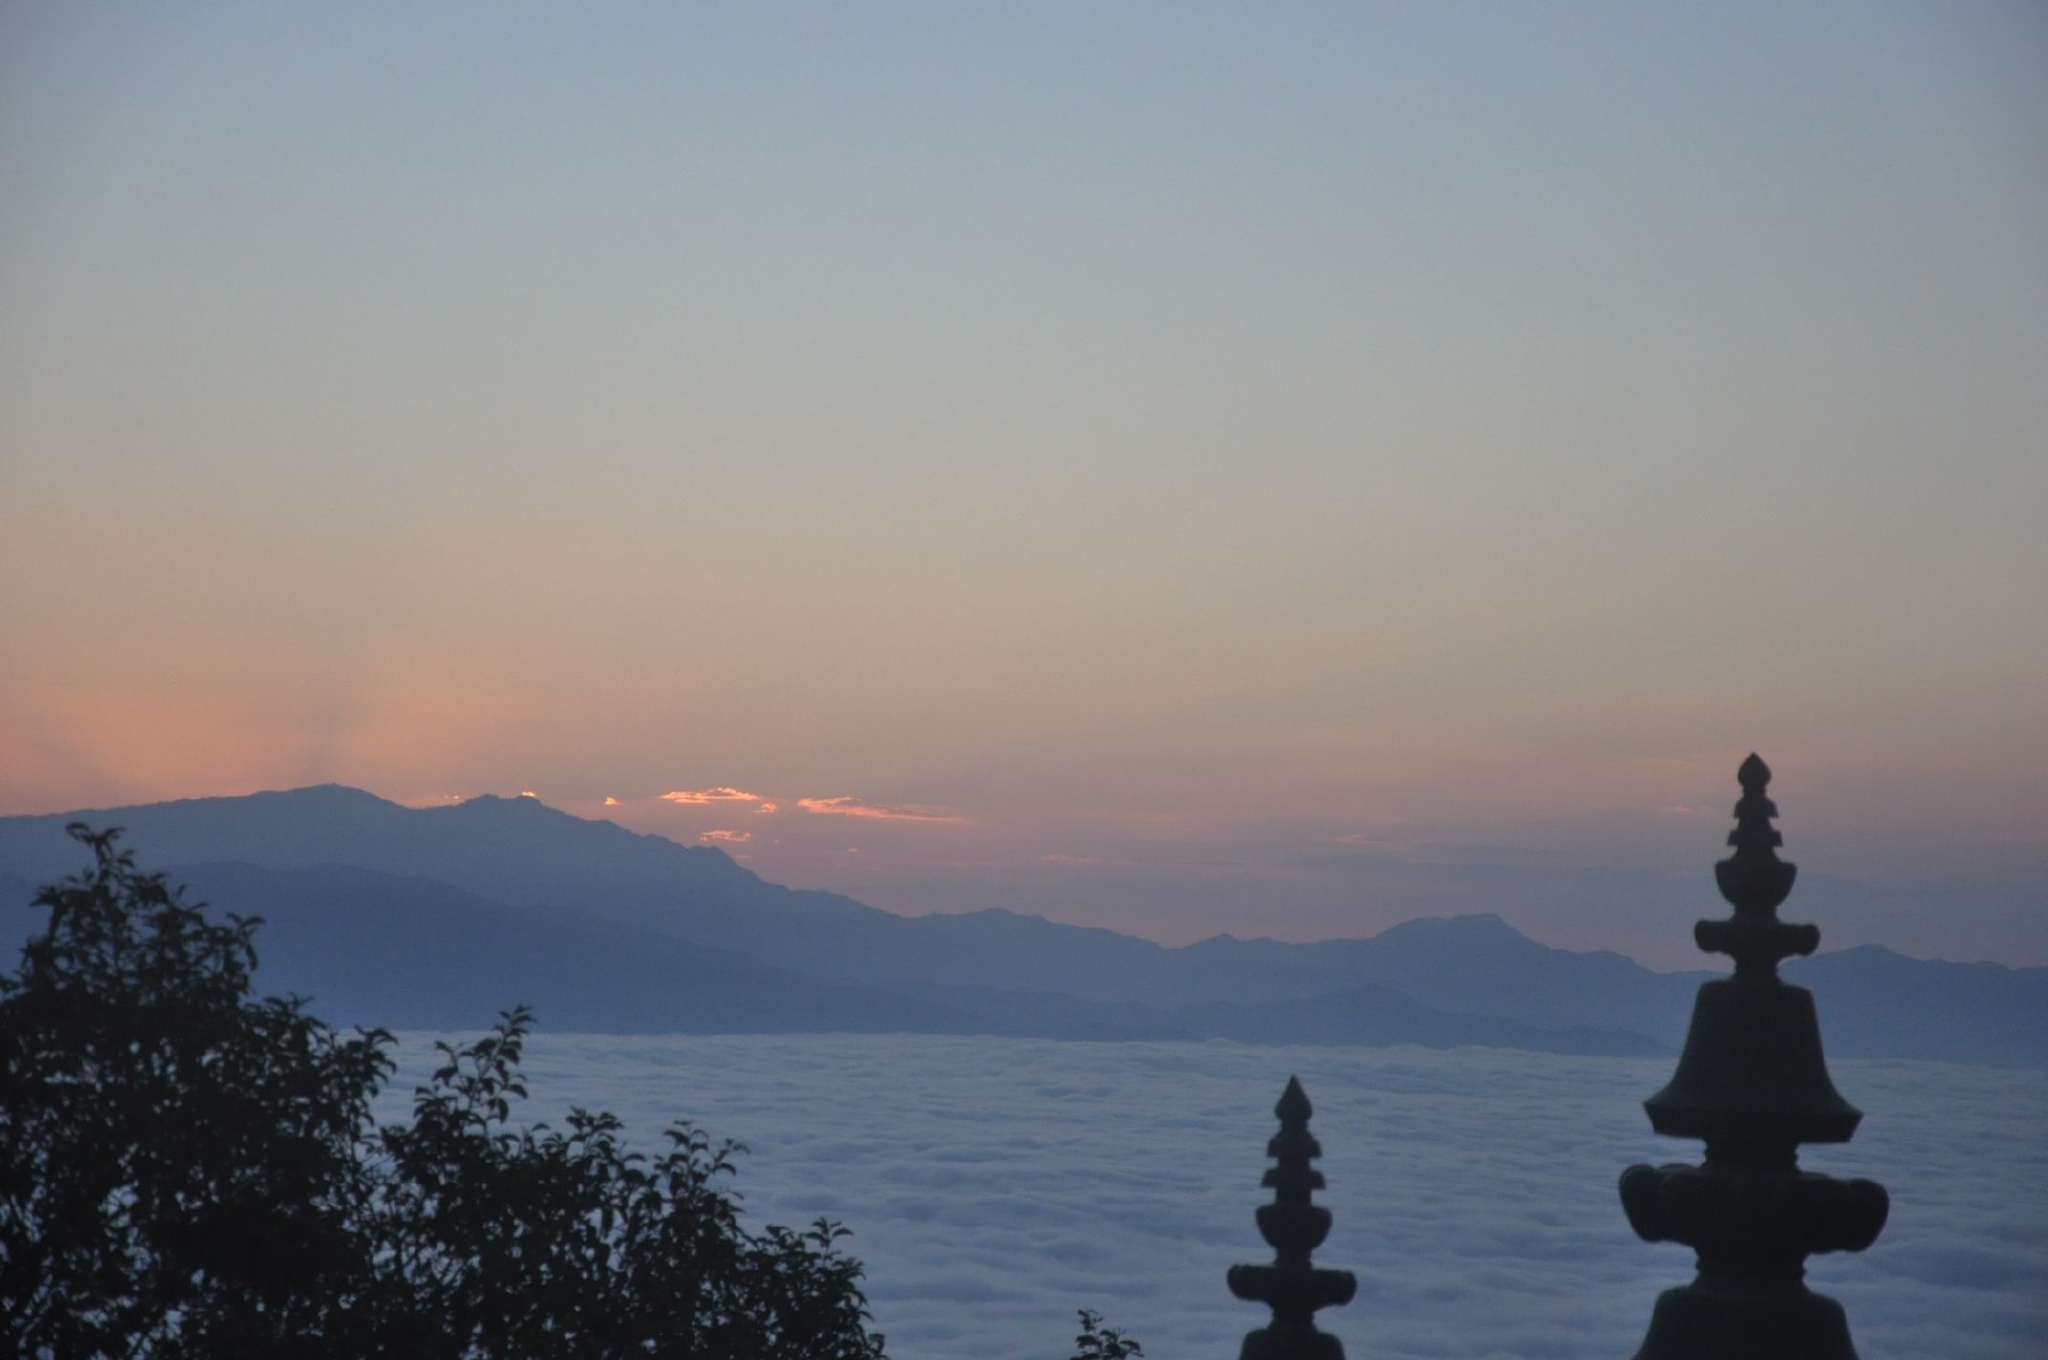 尼泊尔 日出 山 - Pixabay上的免费照片